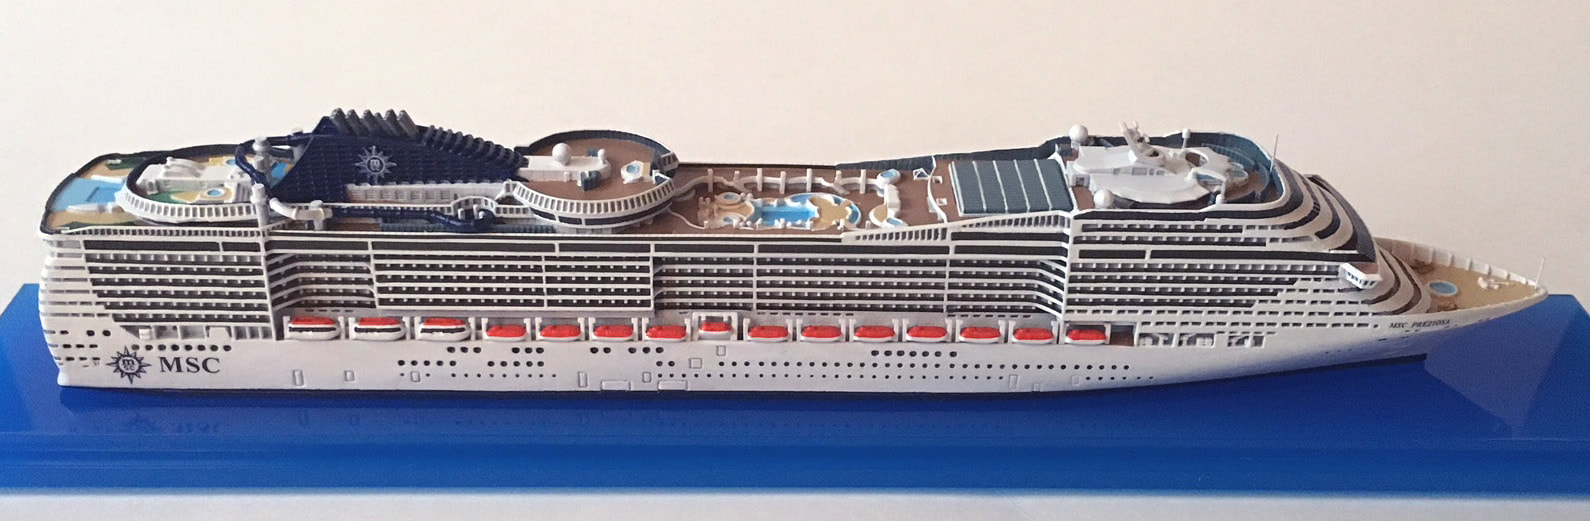 MSC Preziosa cruise ship model 1:1250 scalePicture